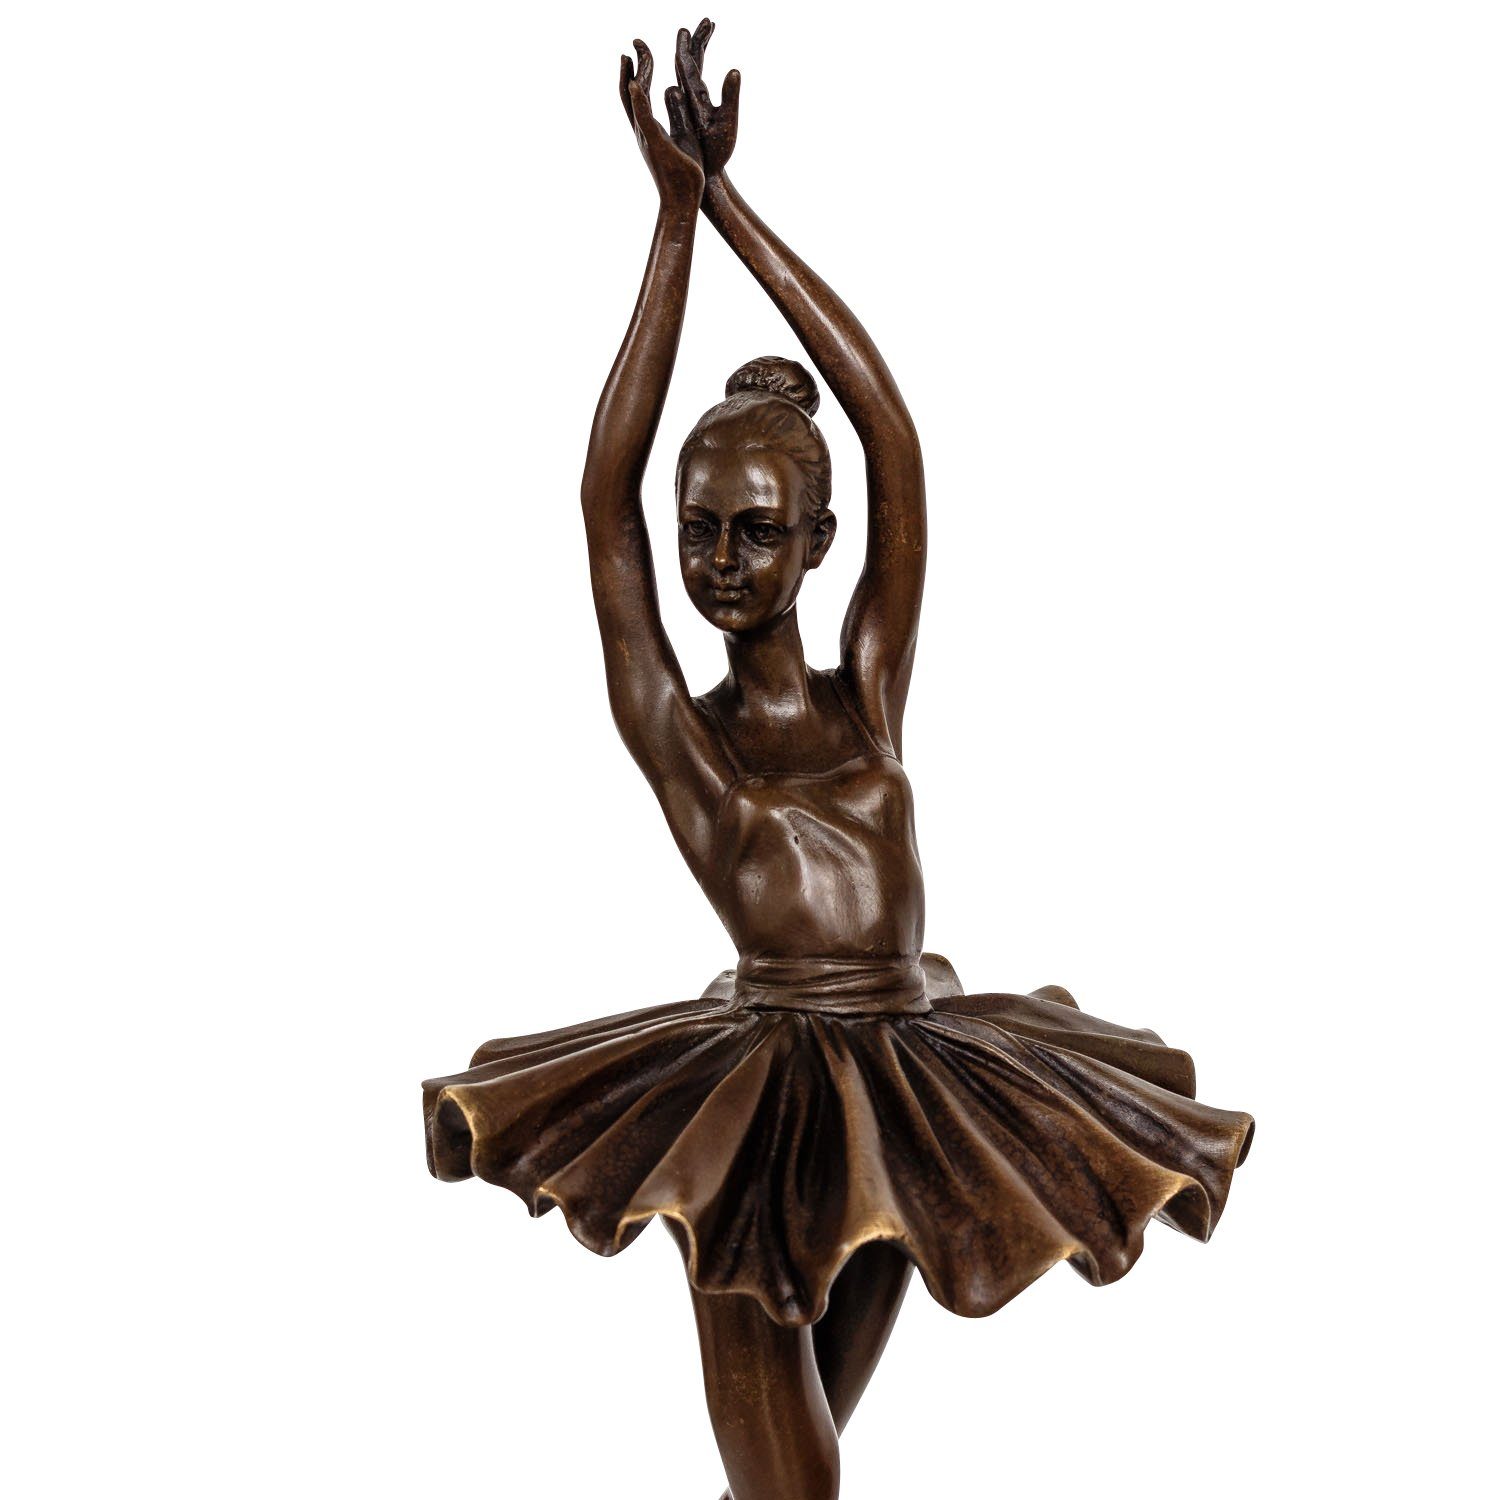 Skulptur Repl nach Ballett Aubaho Ballerina Bronzeskulptur Degas Tänzerin Figur Bronze